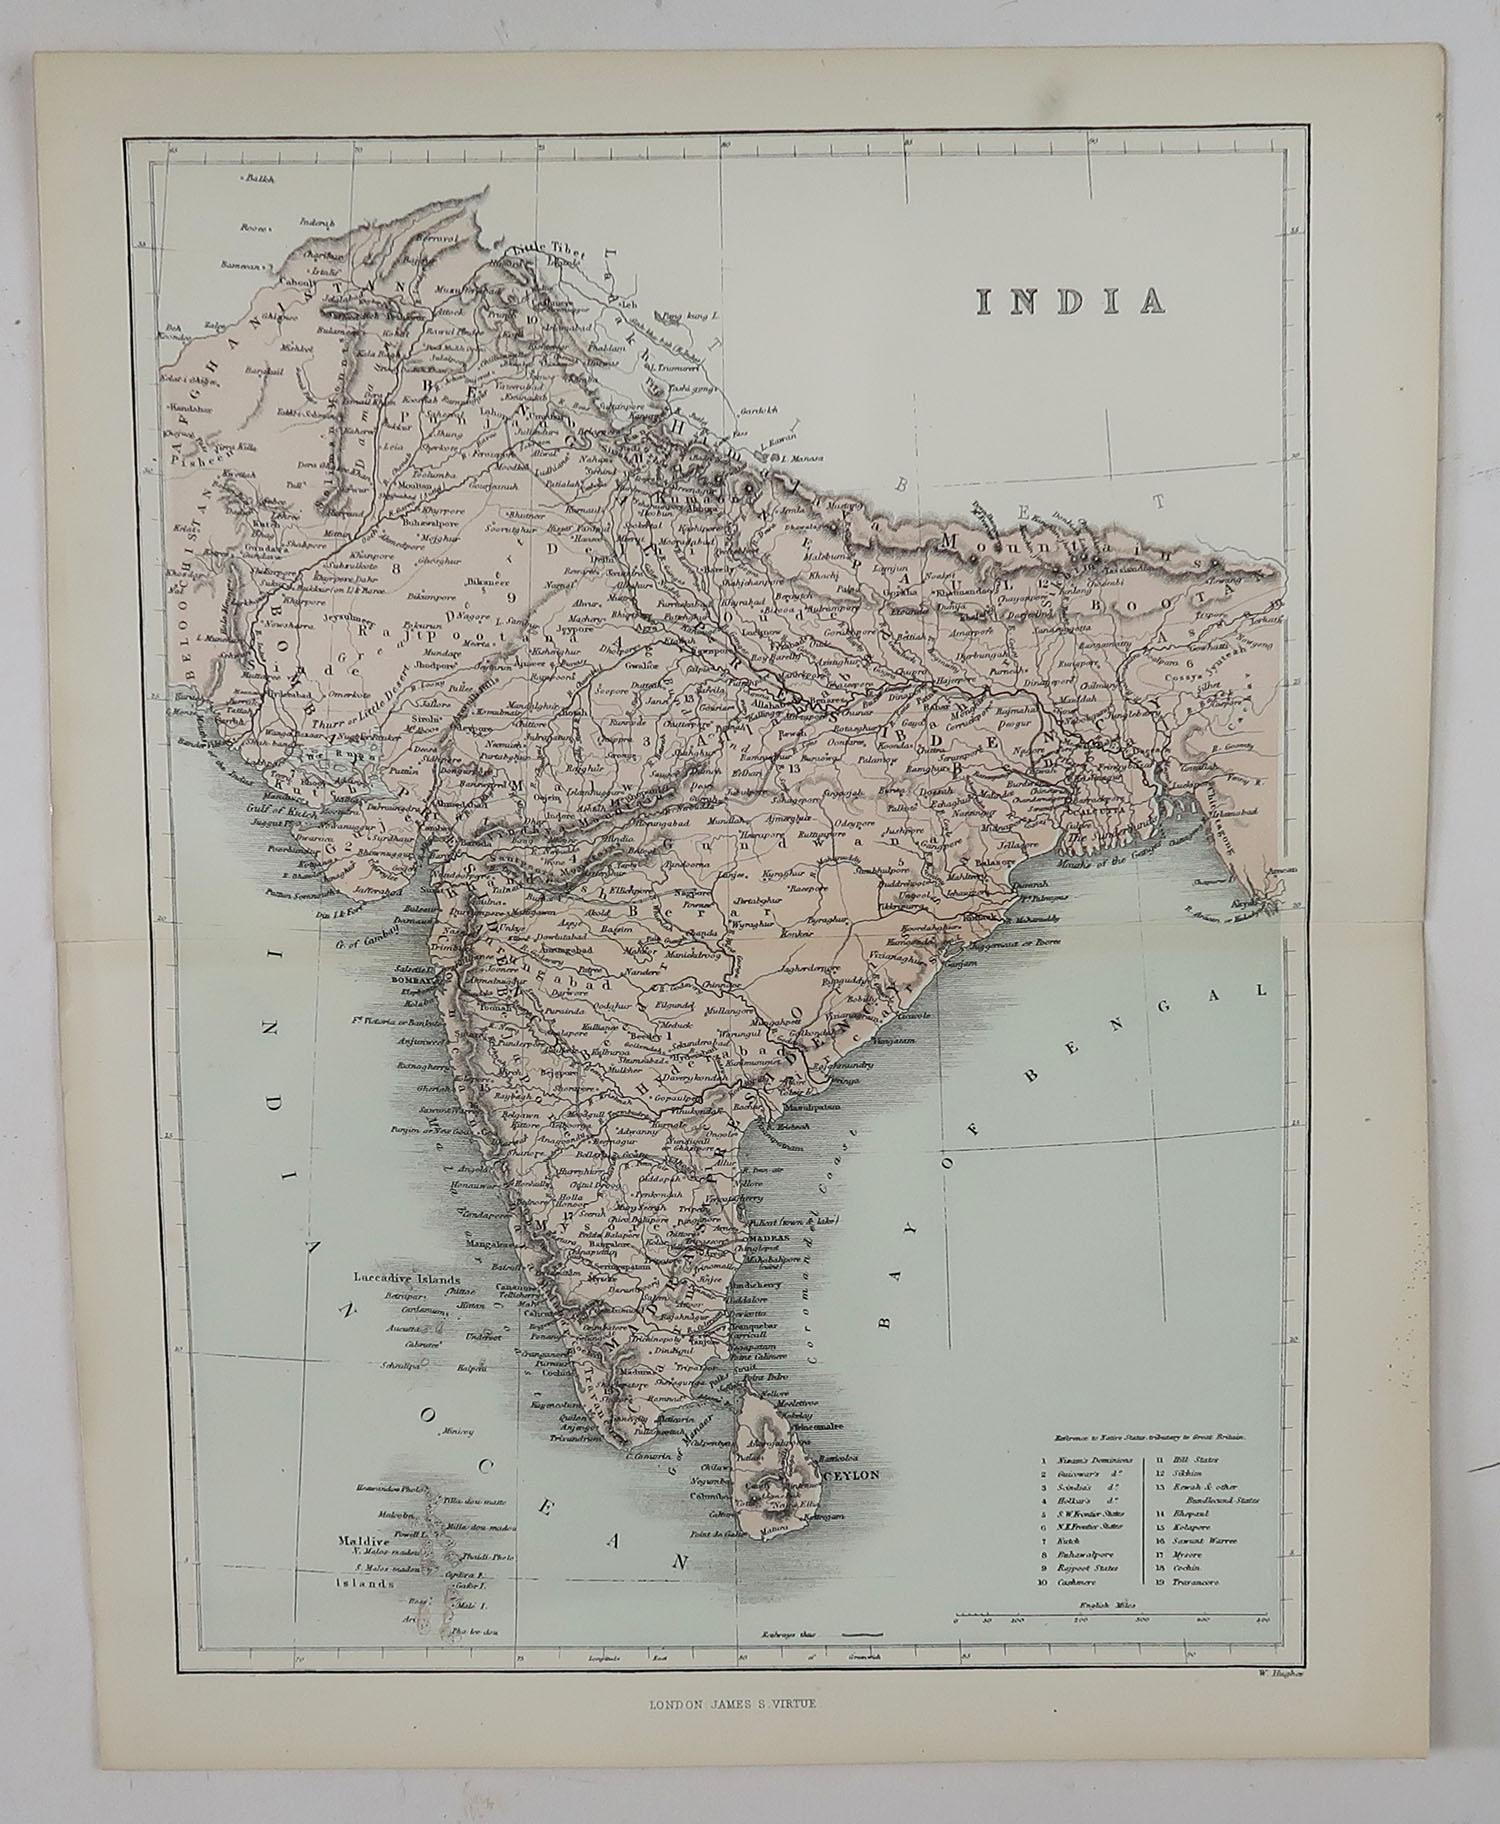 English Original Antique Map of India, circa 1850